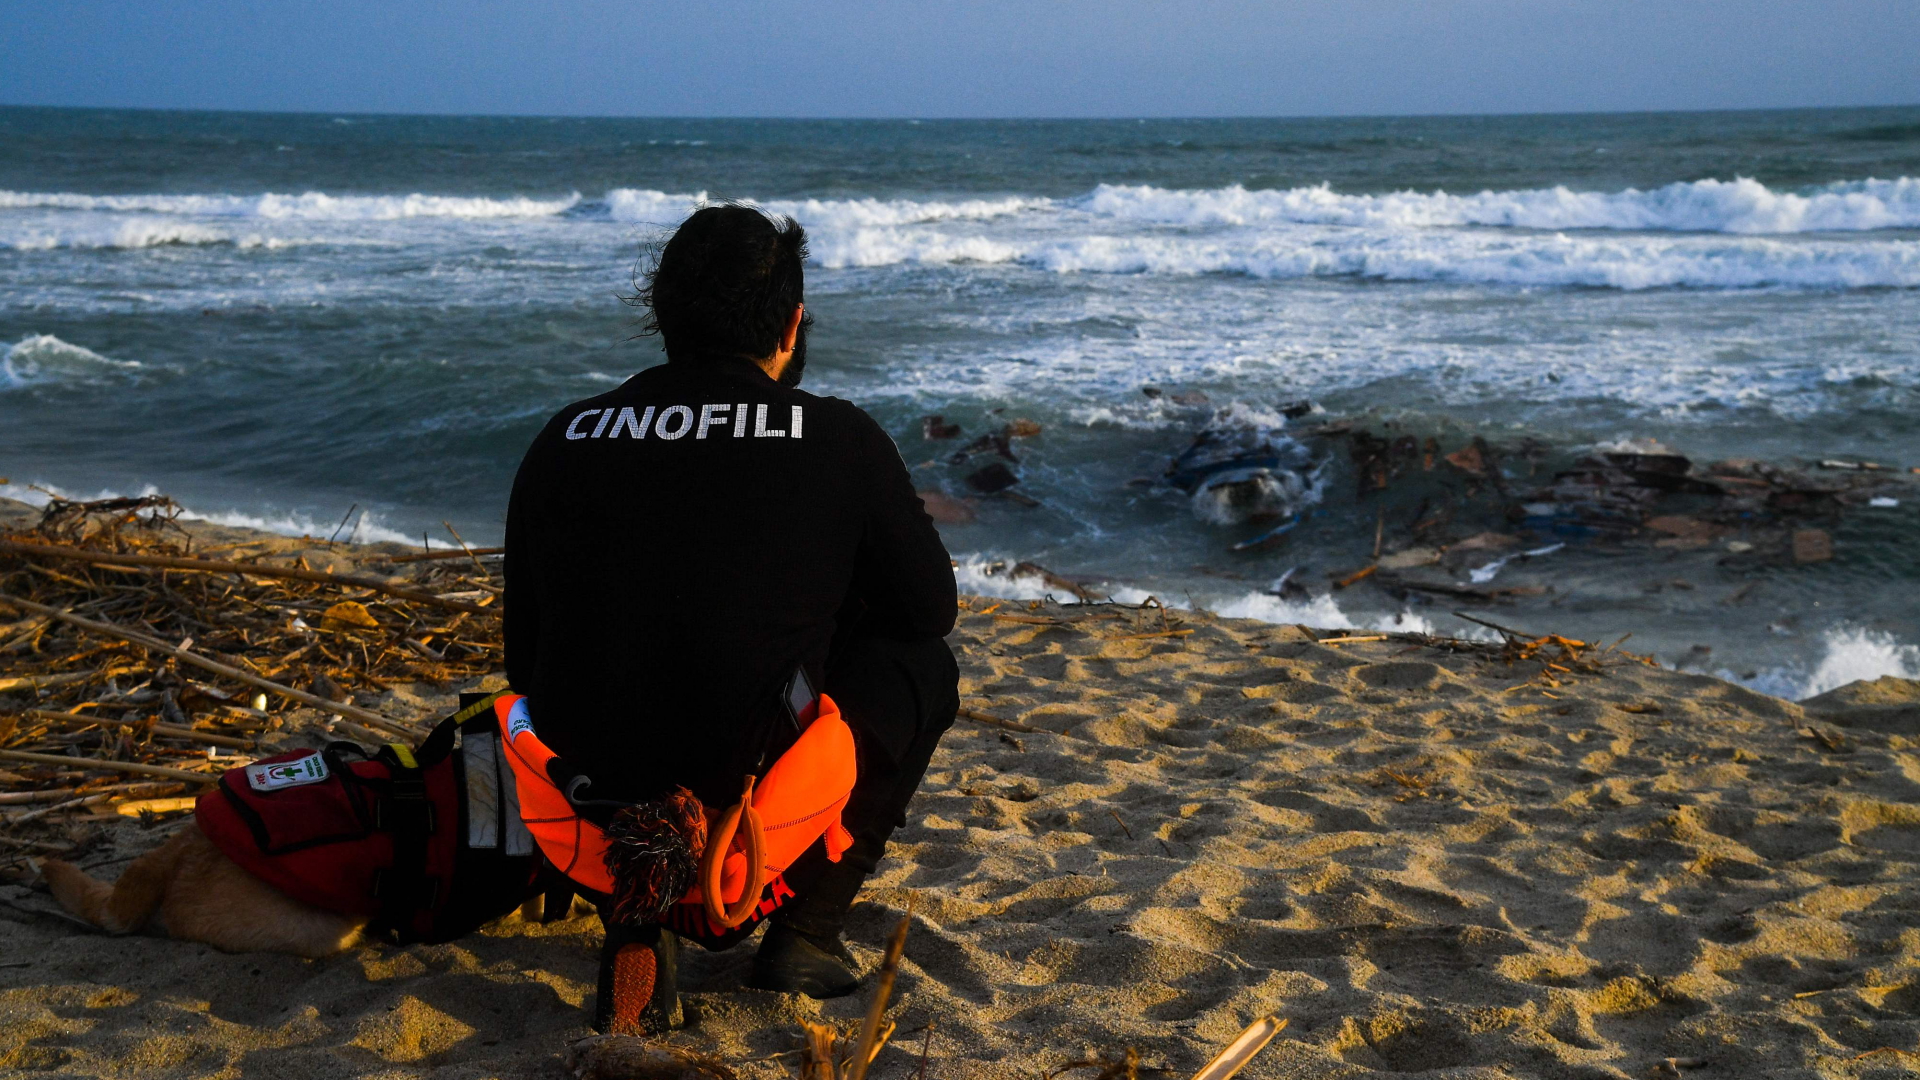 Mindestens 59 Tote: Erschütterung nach Bootsunglück in Süditalien